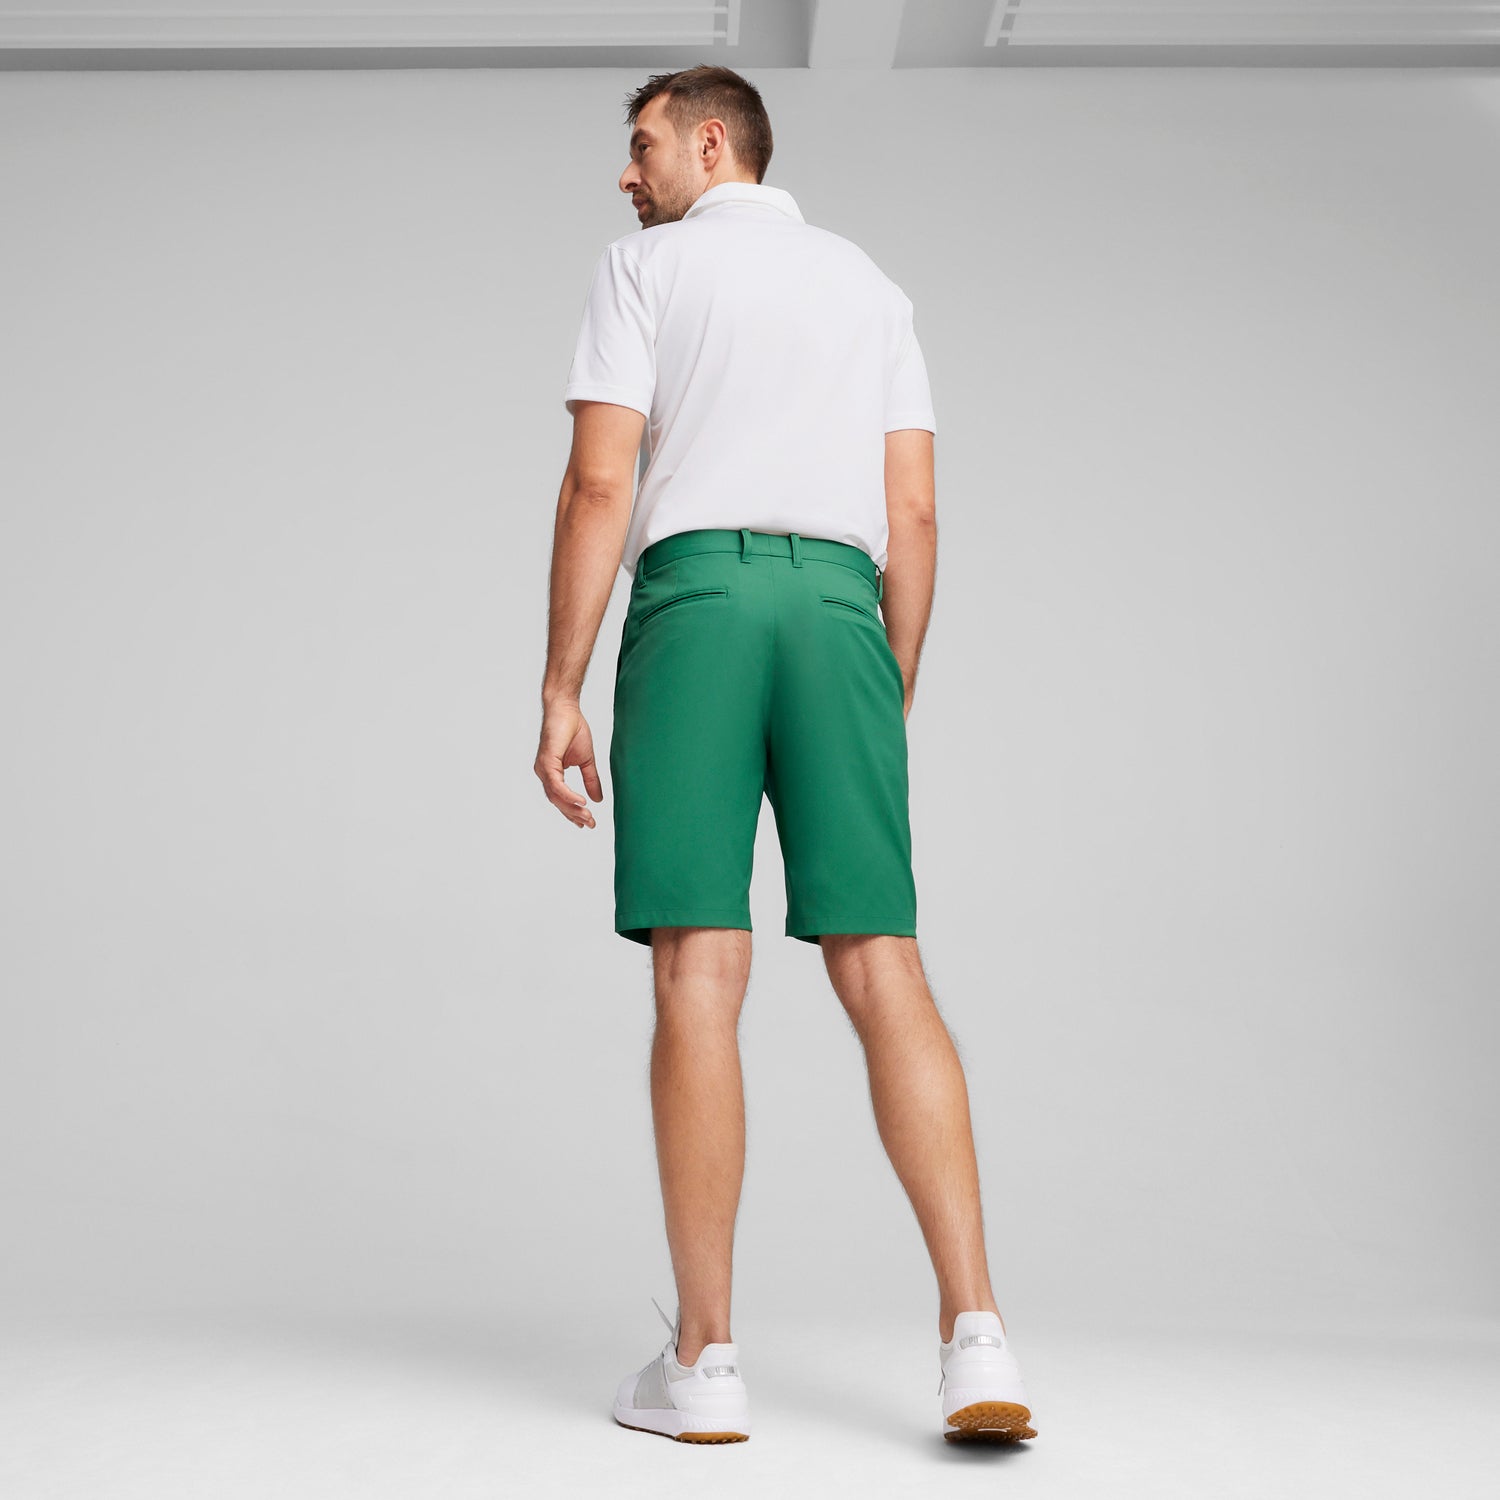 Dealer 10 Golf Shorts – PUMA Golf